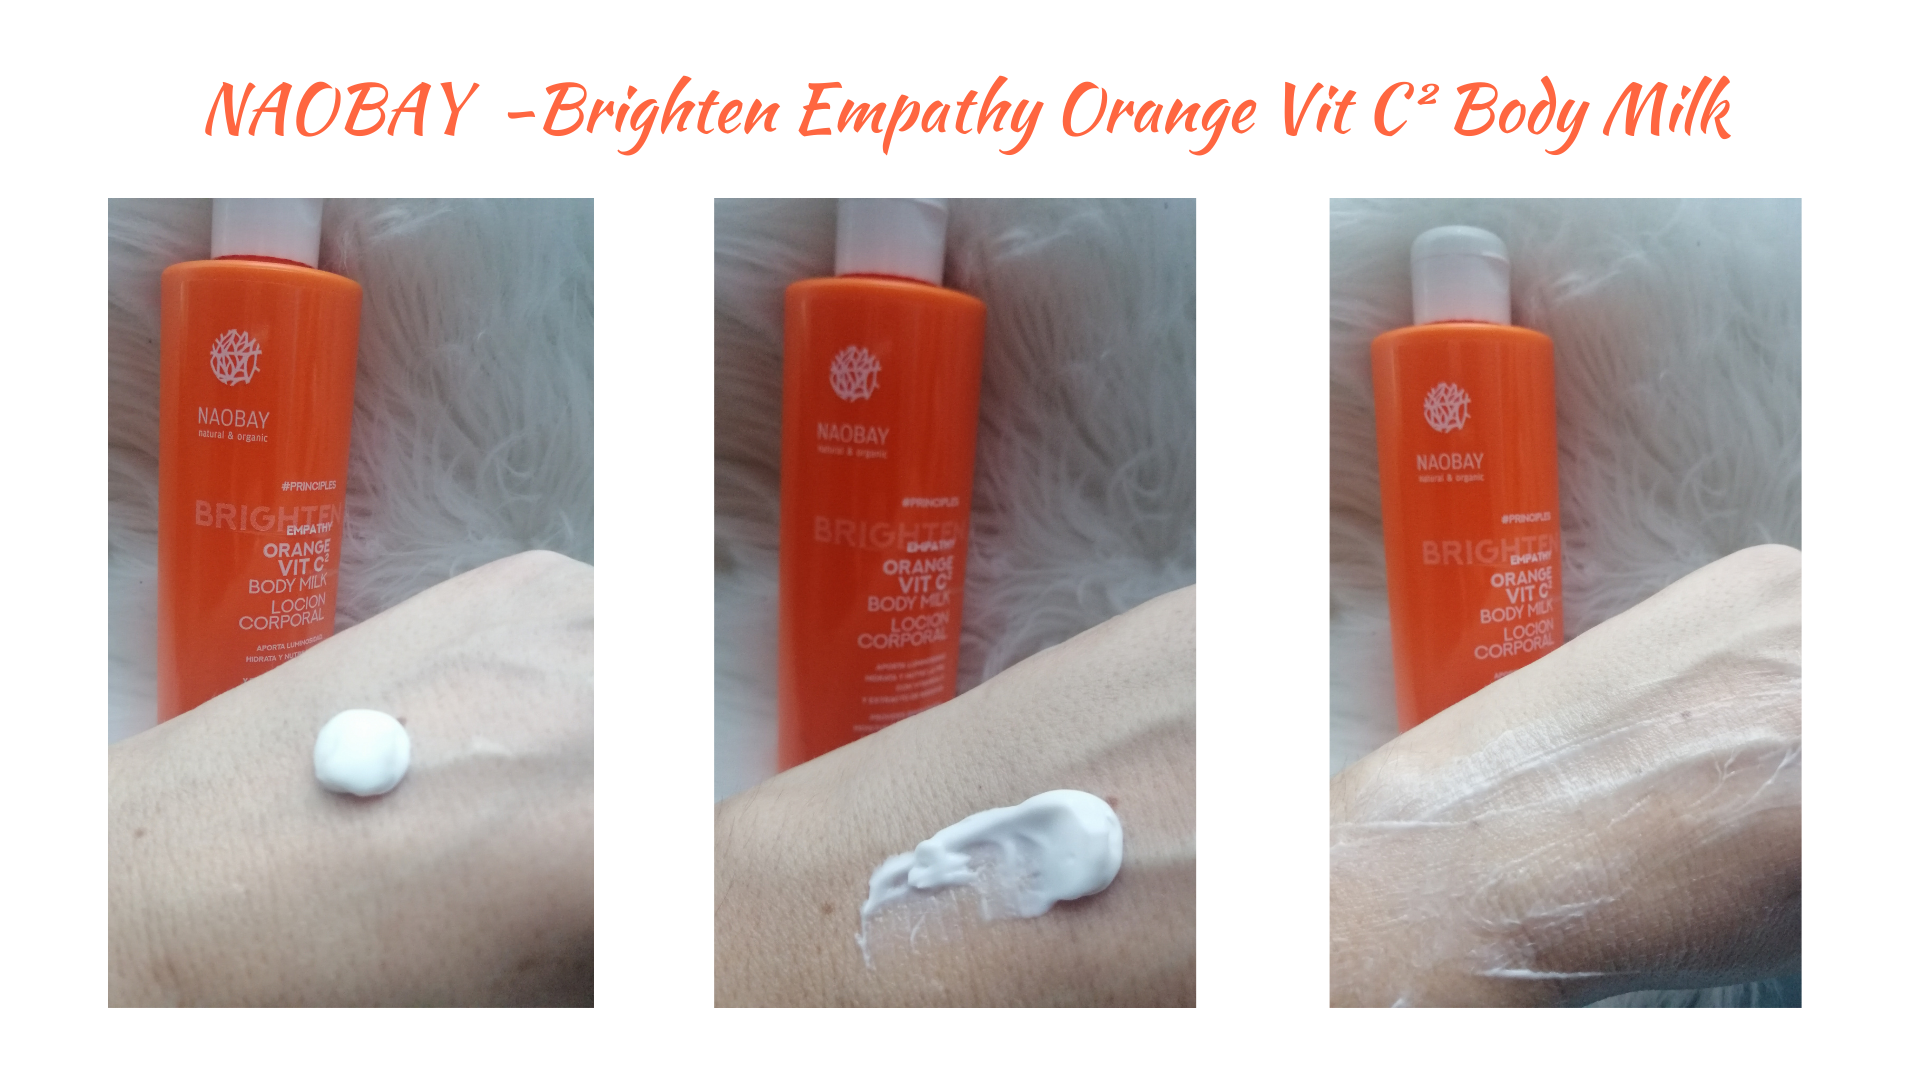 NAOBAY Brighten Empathy Orange Vit C² Body Milk